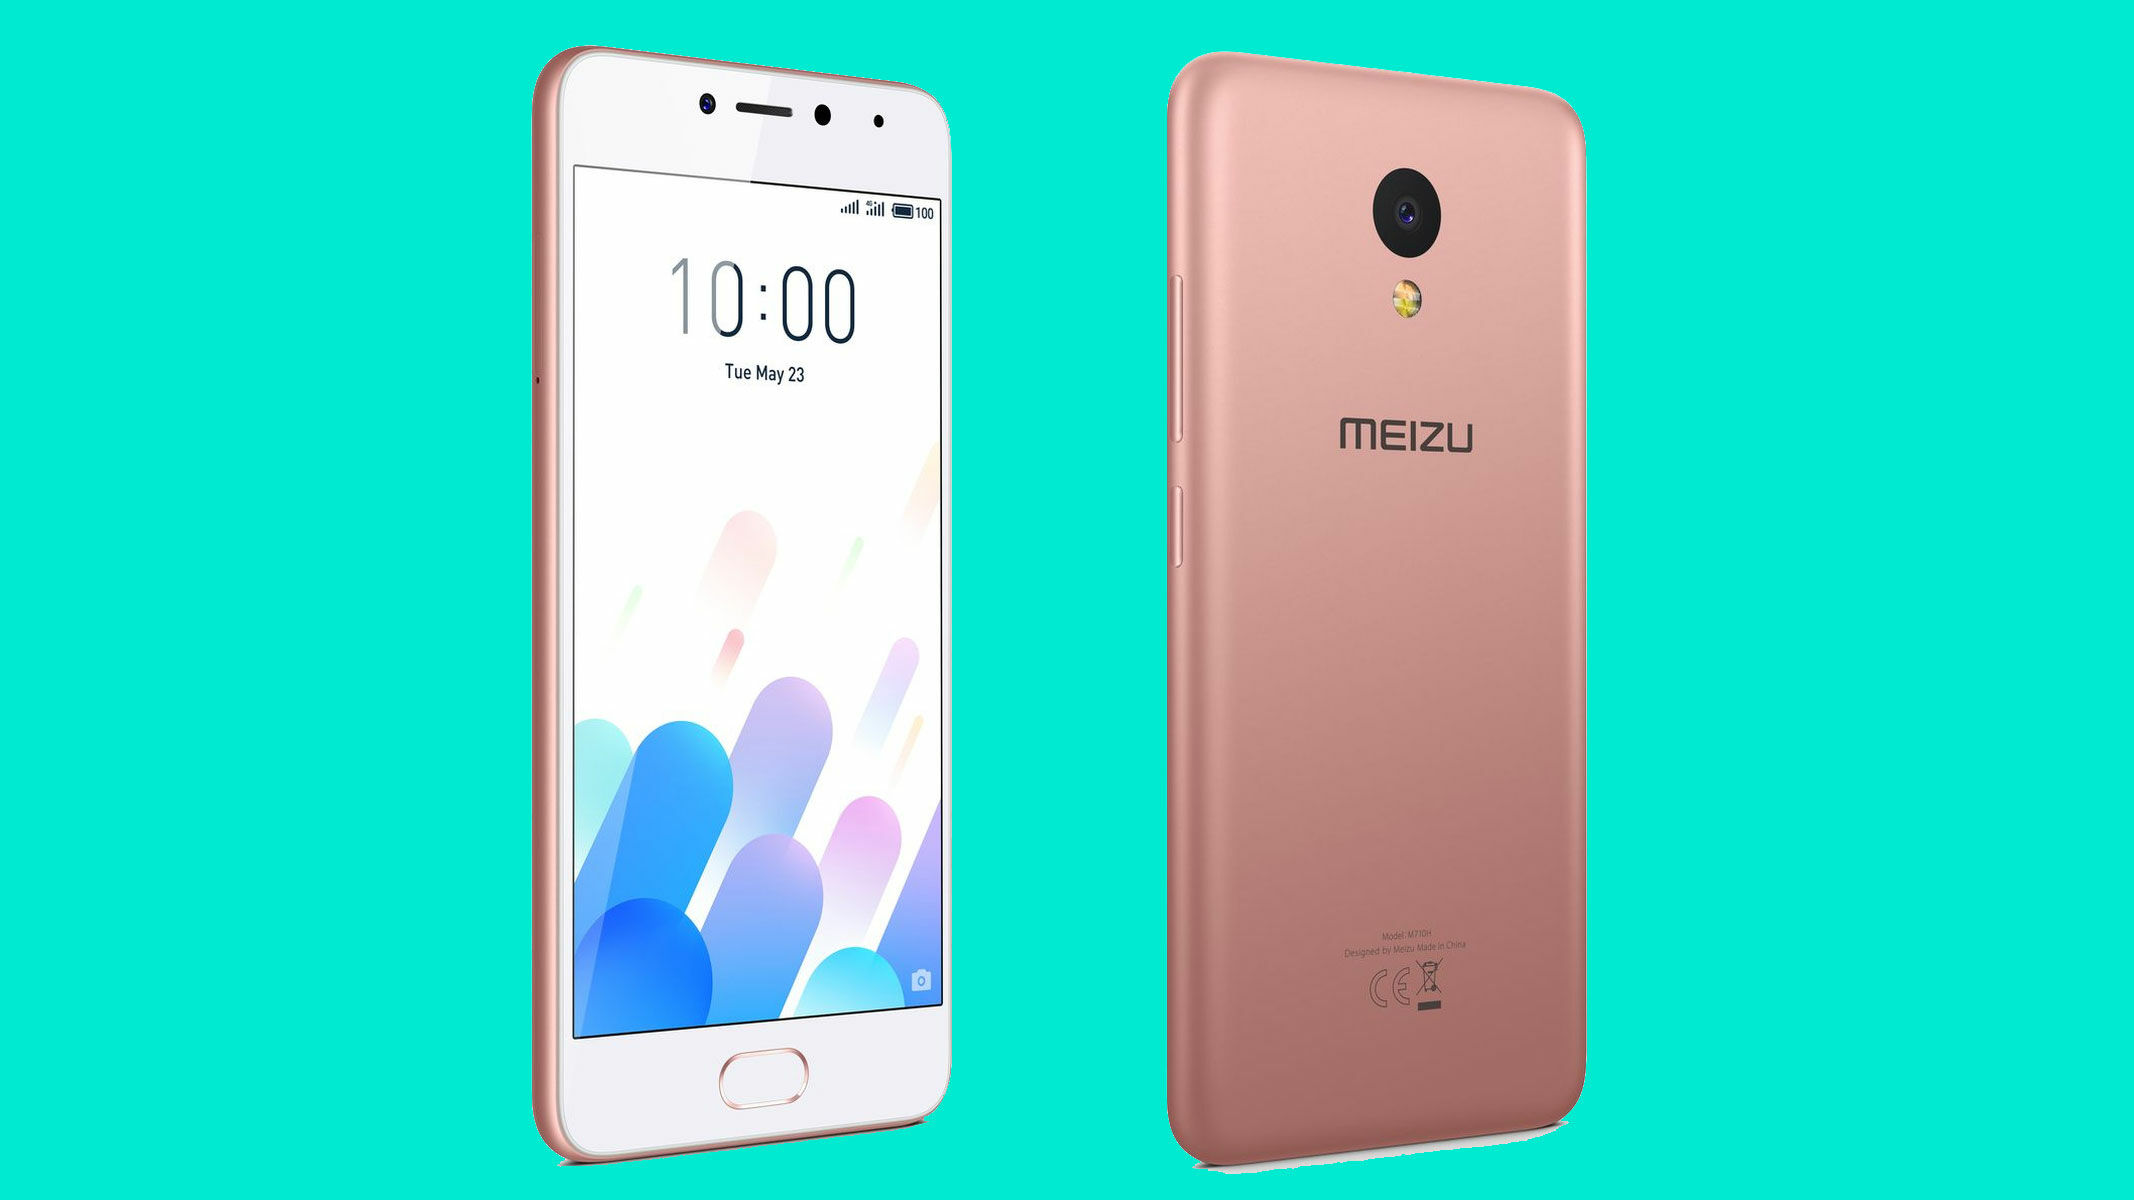 Berikutnya ada smartphone kelas menengah terbaru berbodi seksi dan colorful dari Meizu yakni Meizu M5c Smartphone dengan desain unibody polikarbonat ini